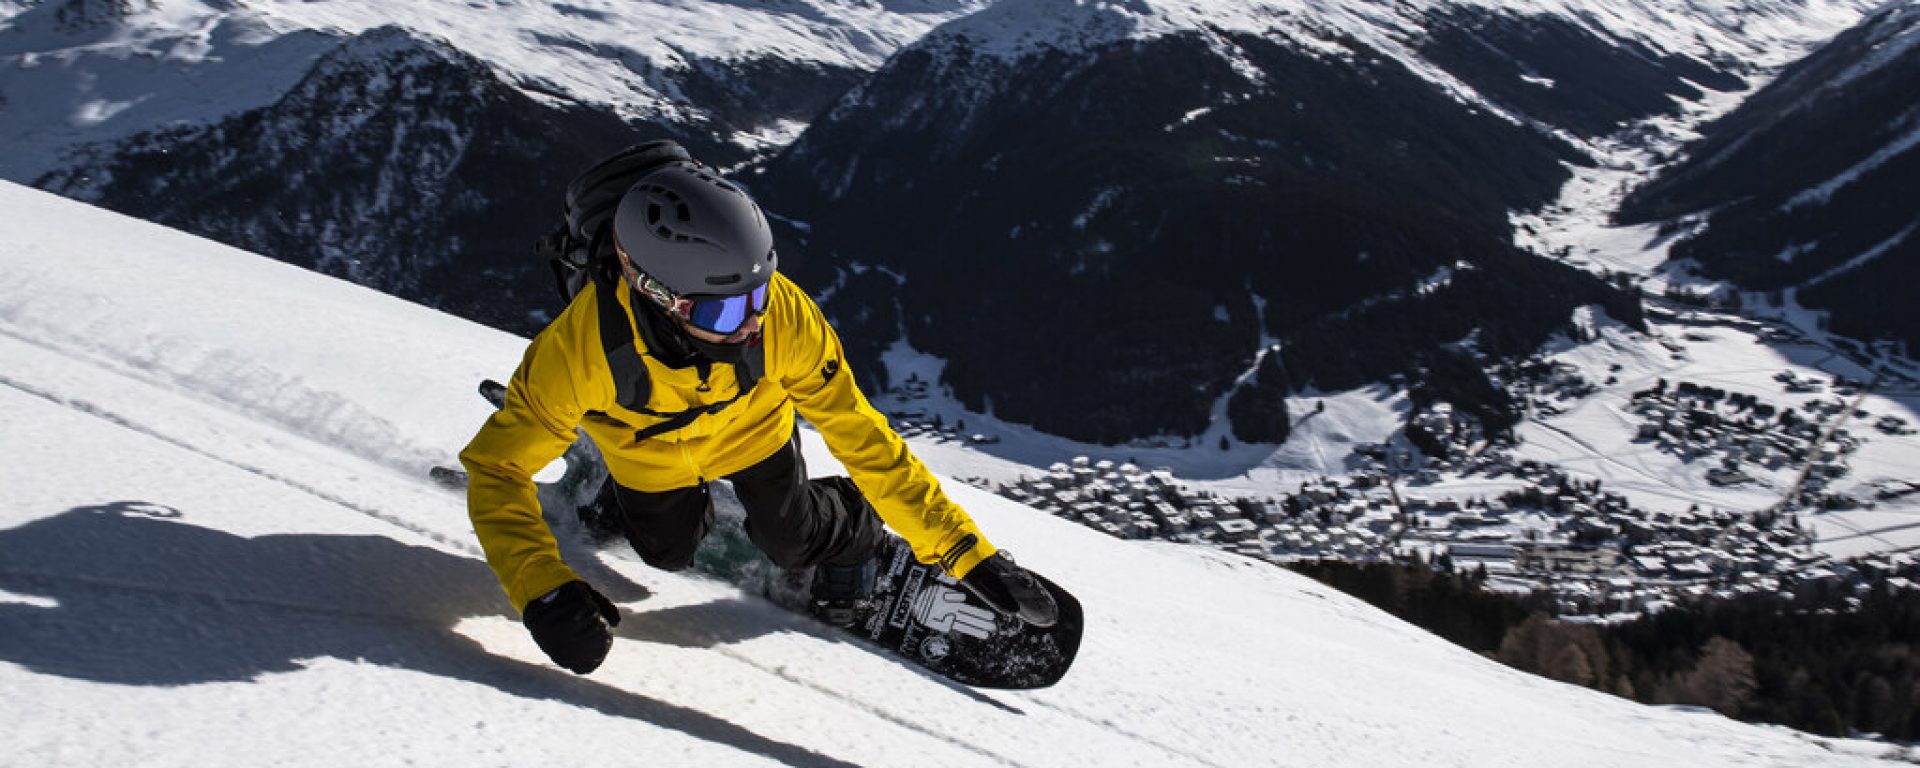 Aparthotel Davos Klosters Snowbard Winter 2020 (C) Dominic Zimmermann (34)